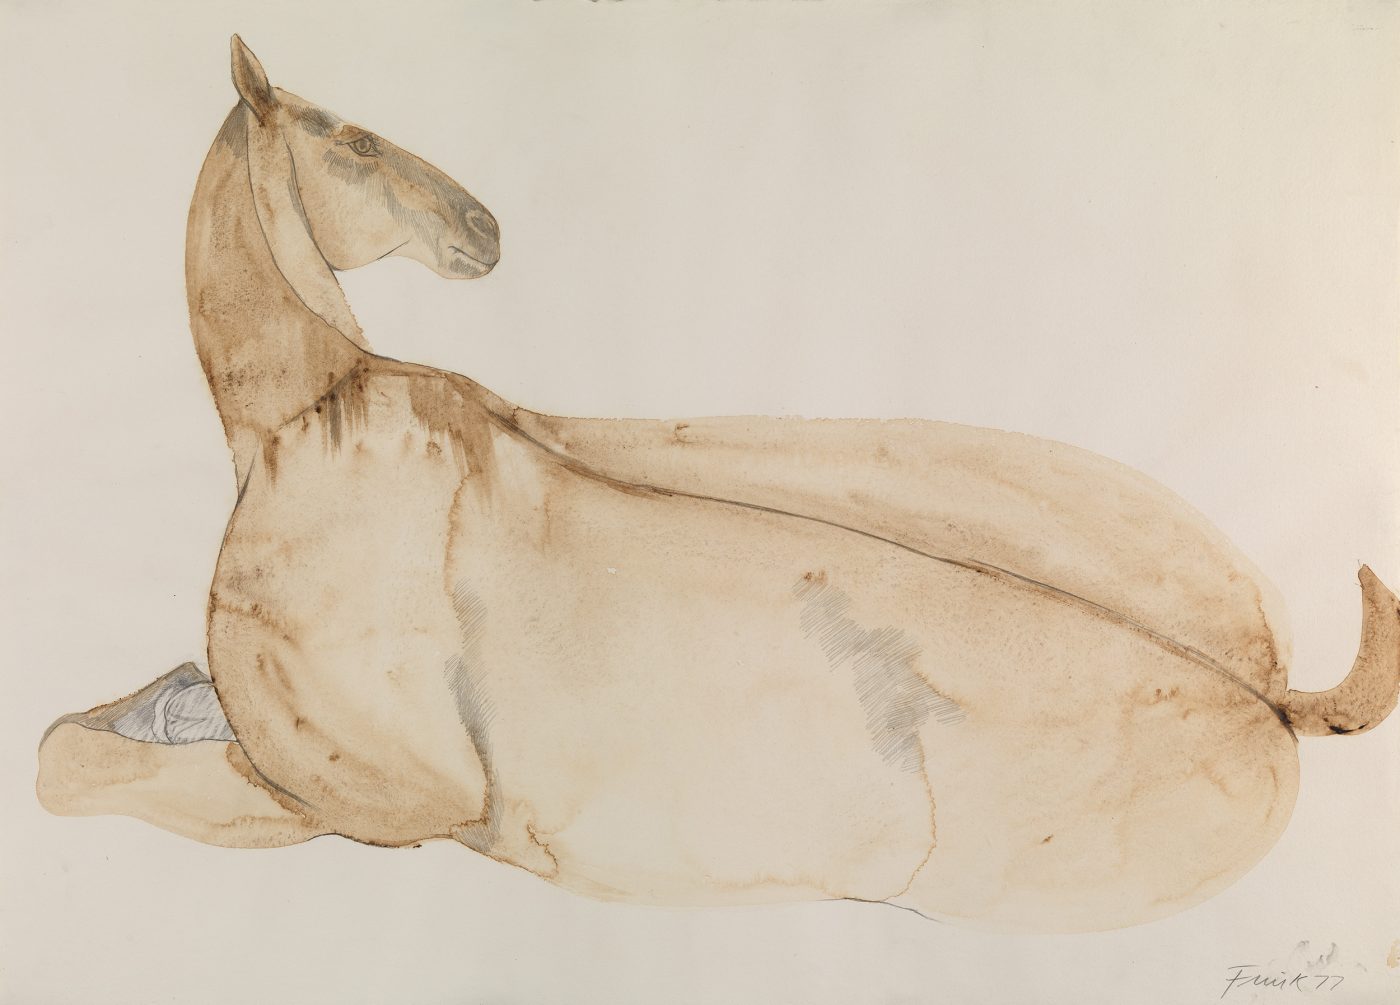 Dame Elisabeth Frink, CH RA (1930-1993), Reclining Horse